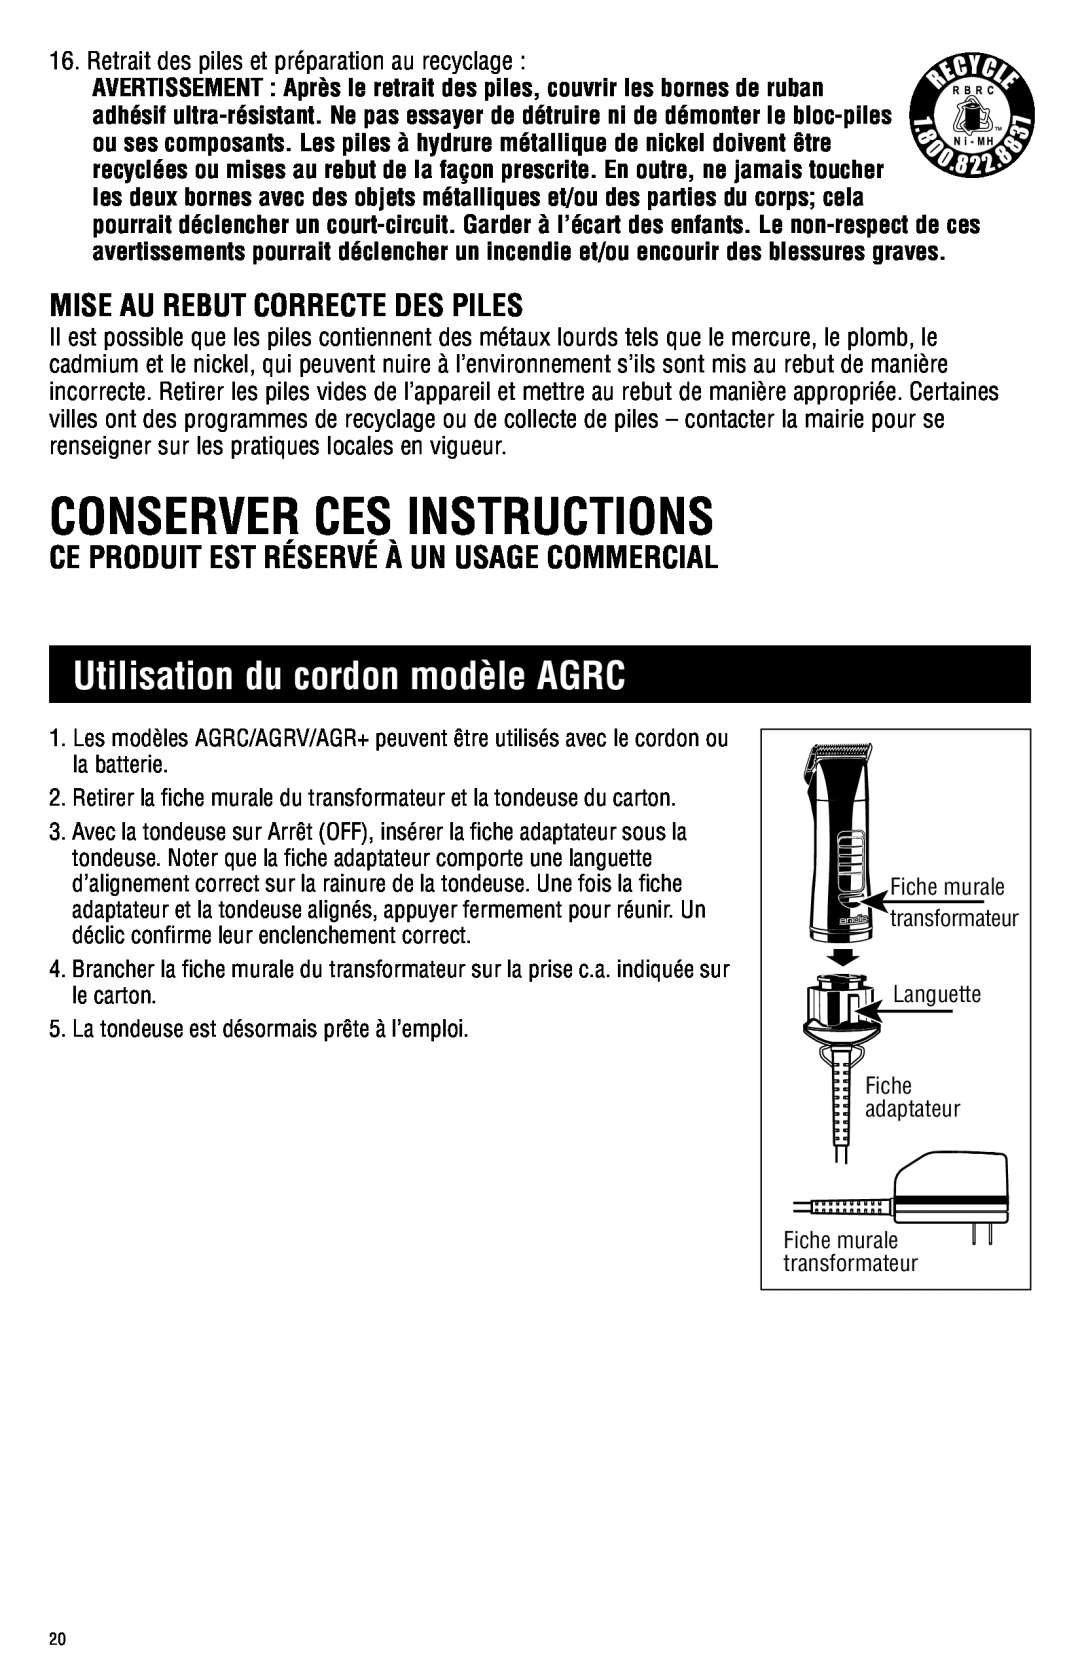 Andis Company manual Conserver Ces Instructions, Utilisation du cordon modèle AGRC 